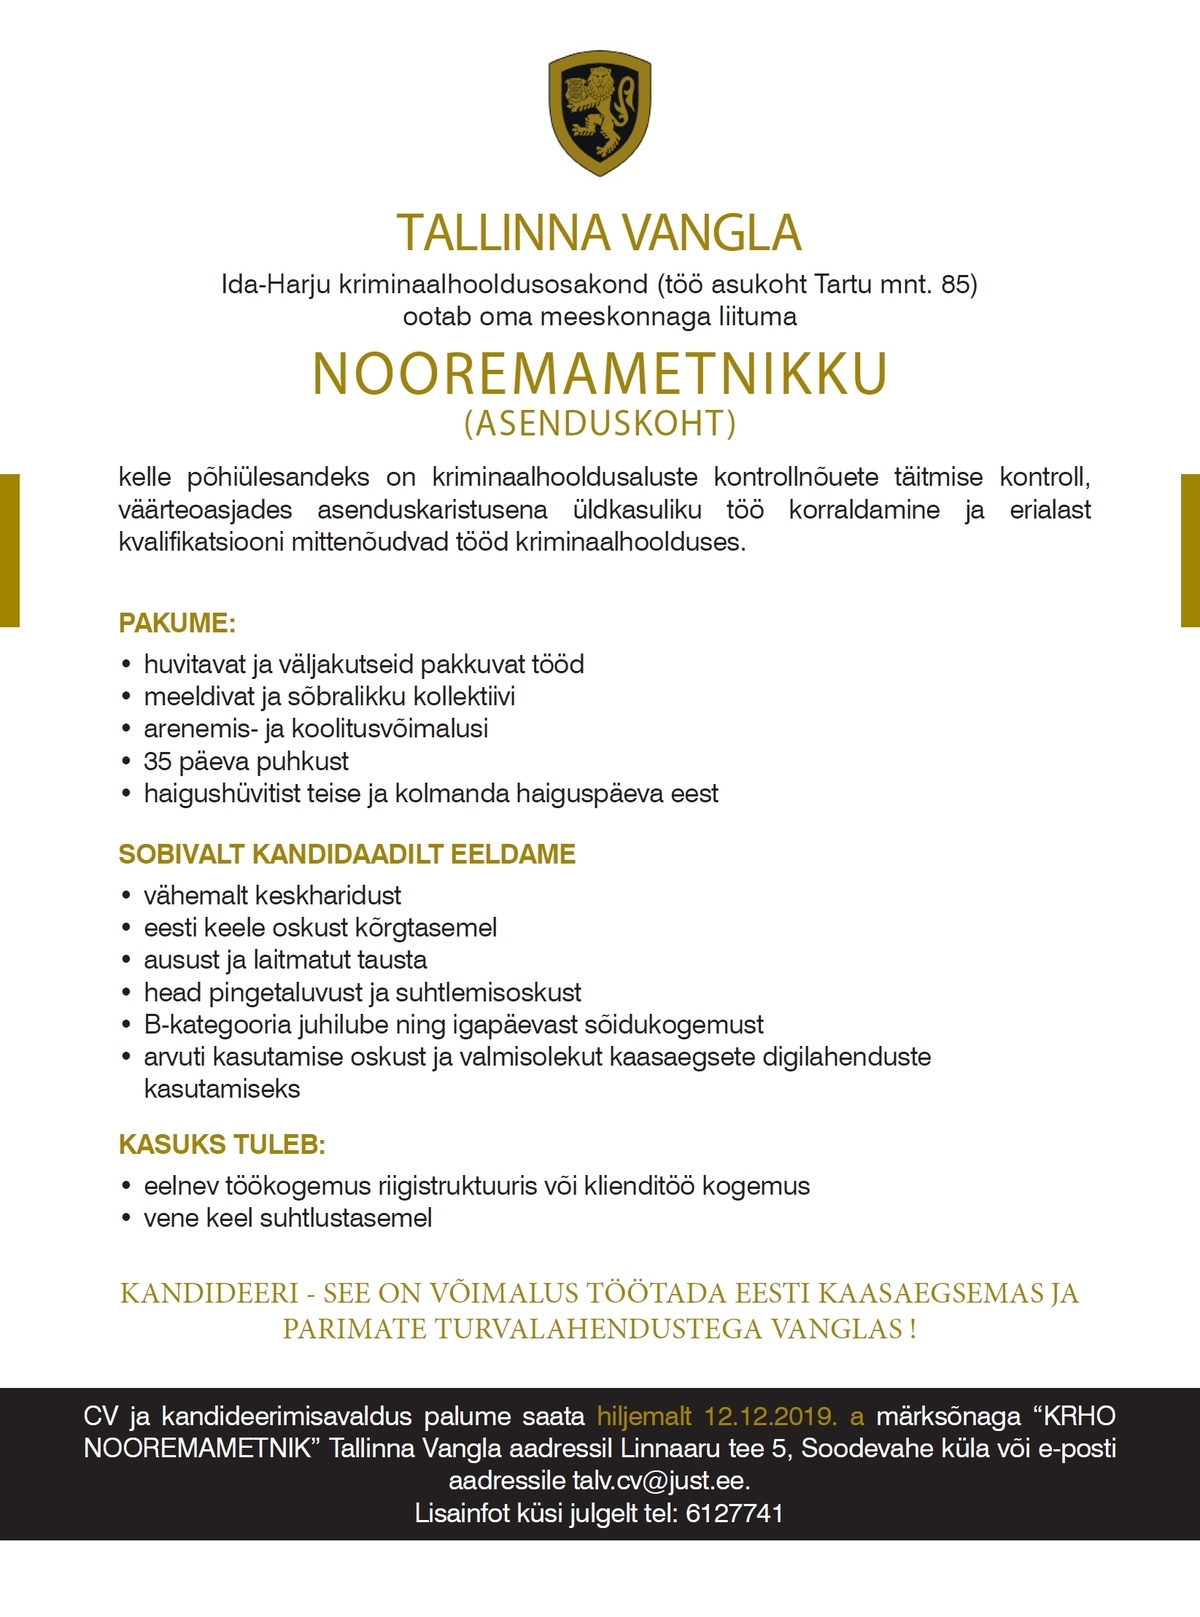 Tallinna Vangla Ida-Harju Kriminaalhooldusosakonna nooremametnik (asenduskoht)